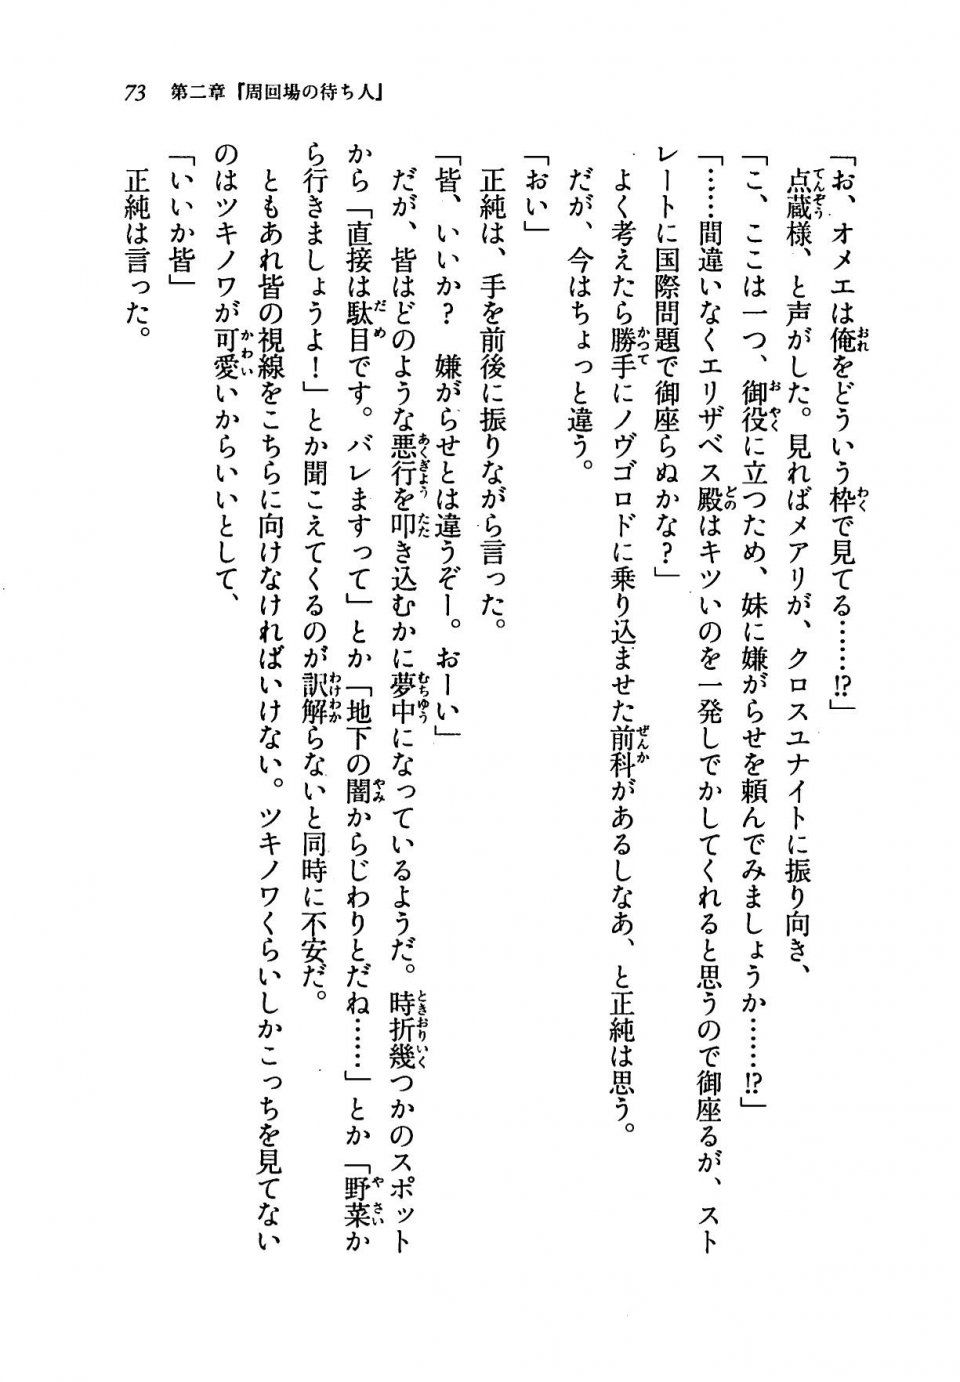 Kyoukai Senjou no Horizon LN Vol 19(8A) - Photo #73